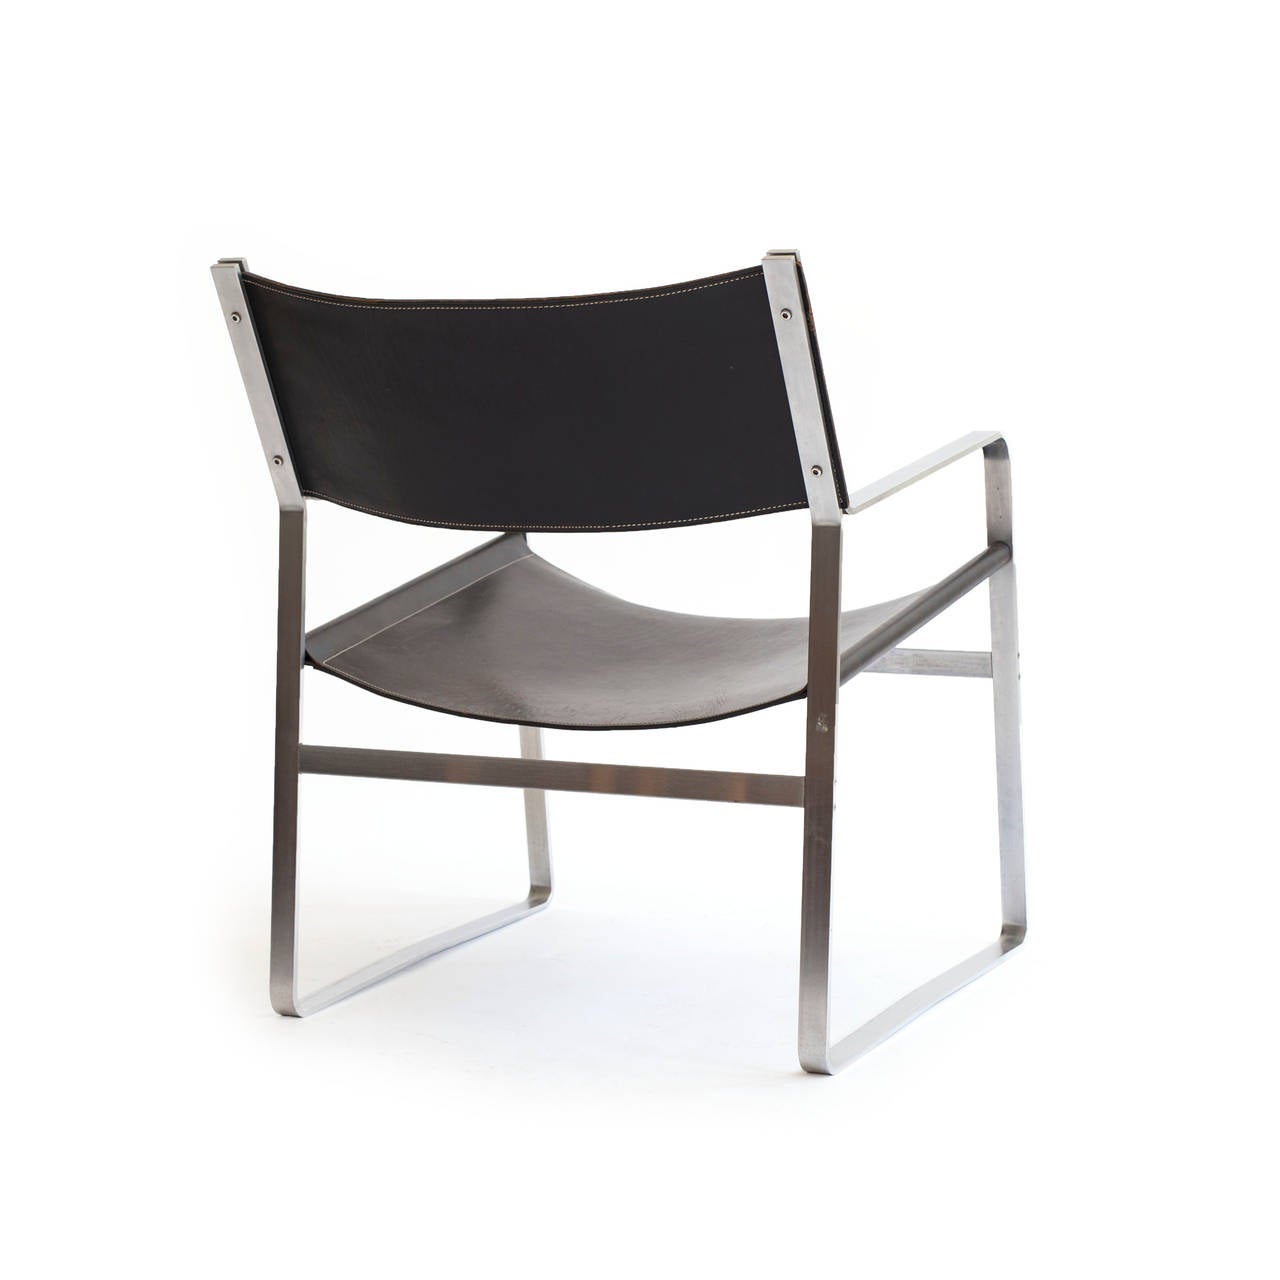 Danish Hans J. Wegner JH-812 Lounge Chair, Johannes Hansen